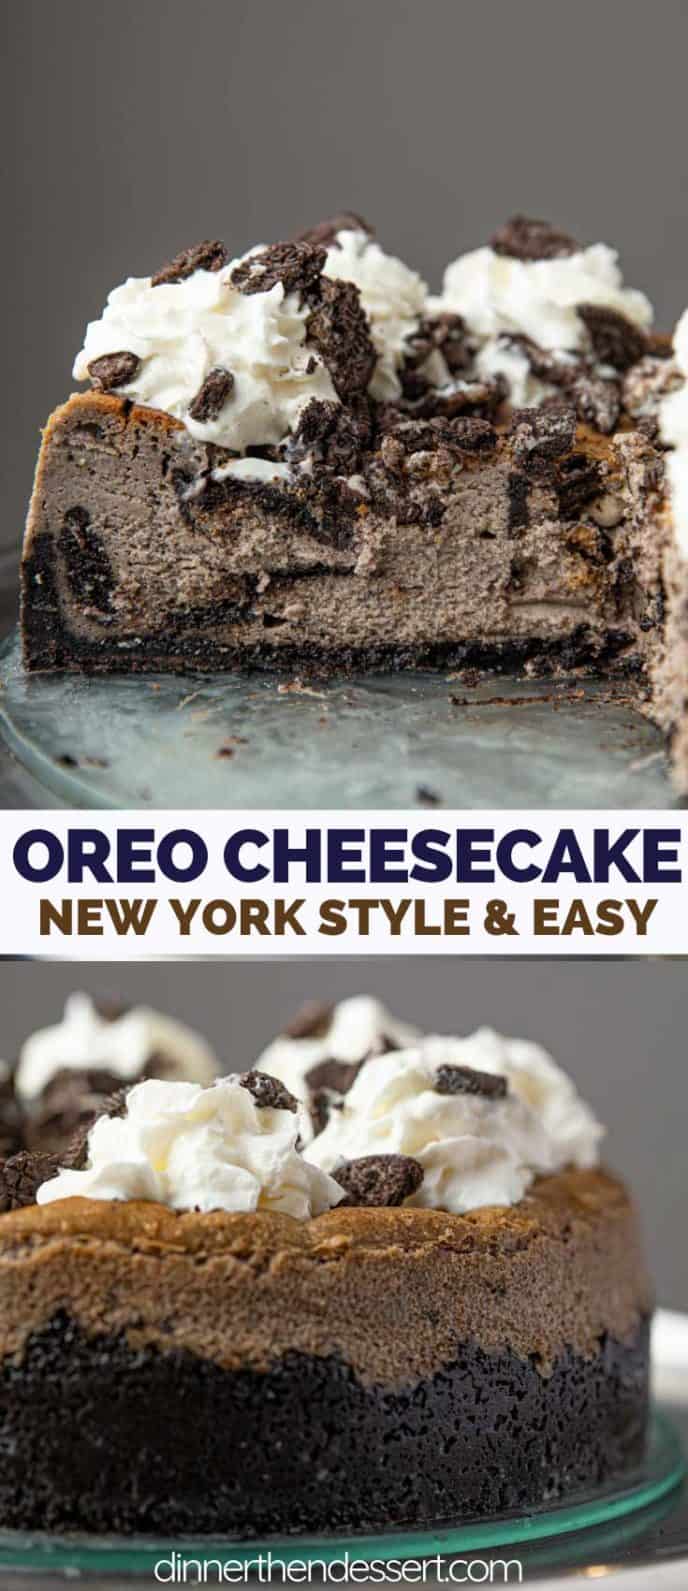 New York Style Oreo Cheesecake